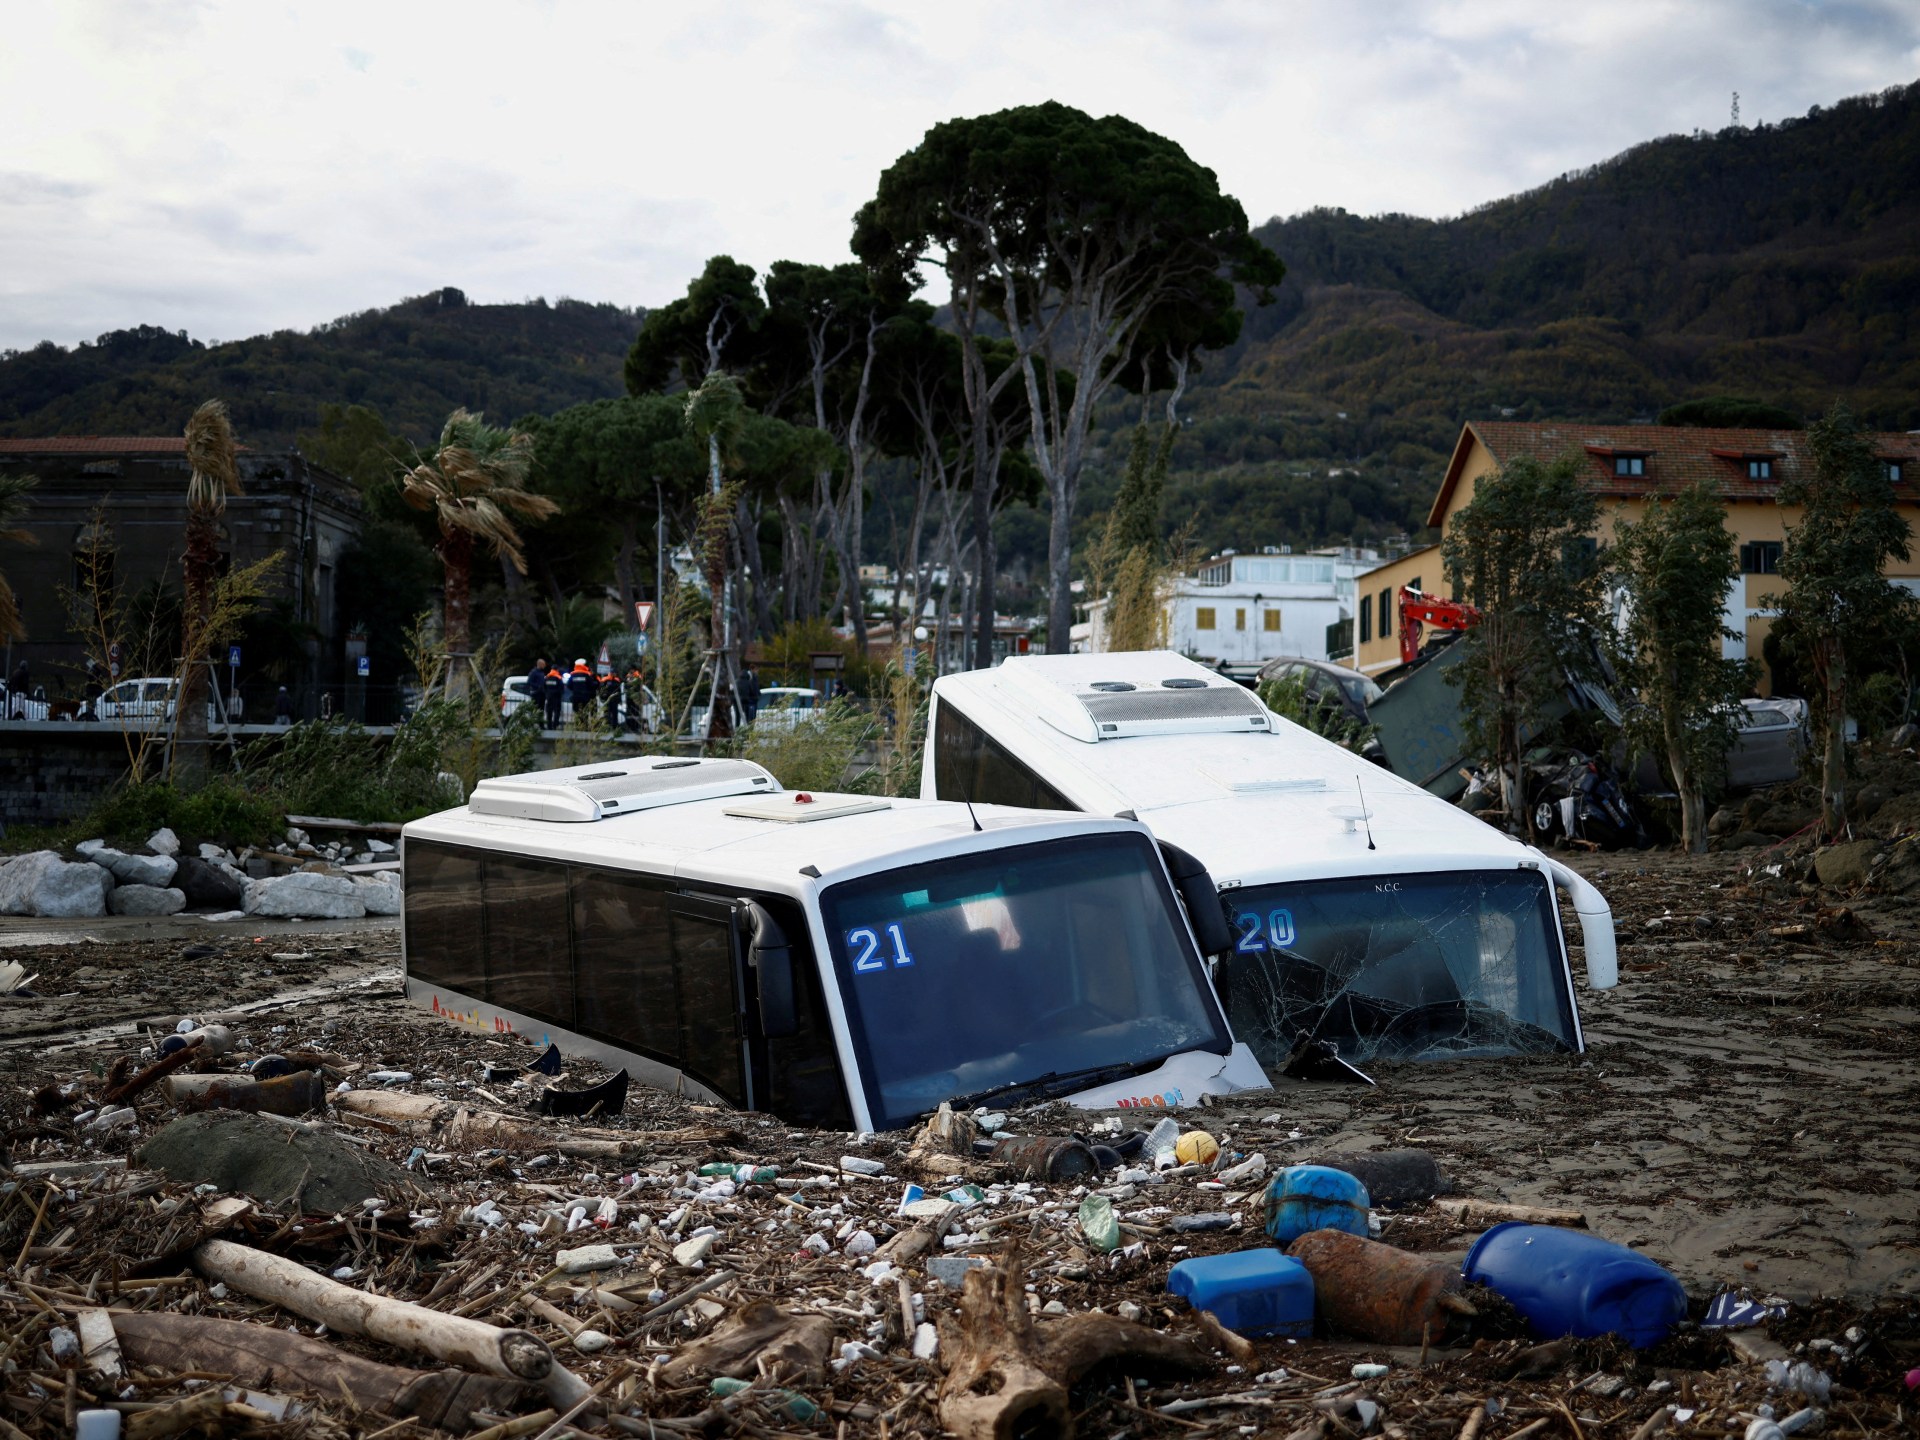 Almeno sette persone sono morte in una frana sull’isola italiana di Ischia  Notizie sull’alluvione